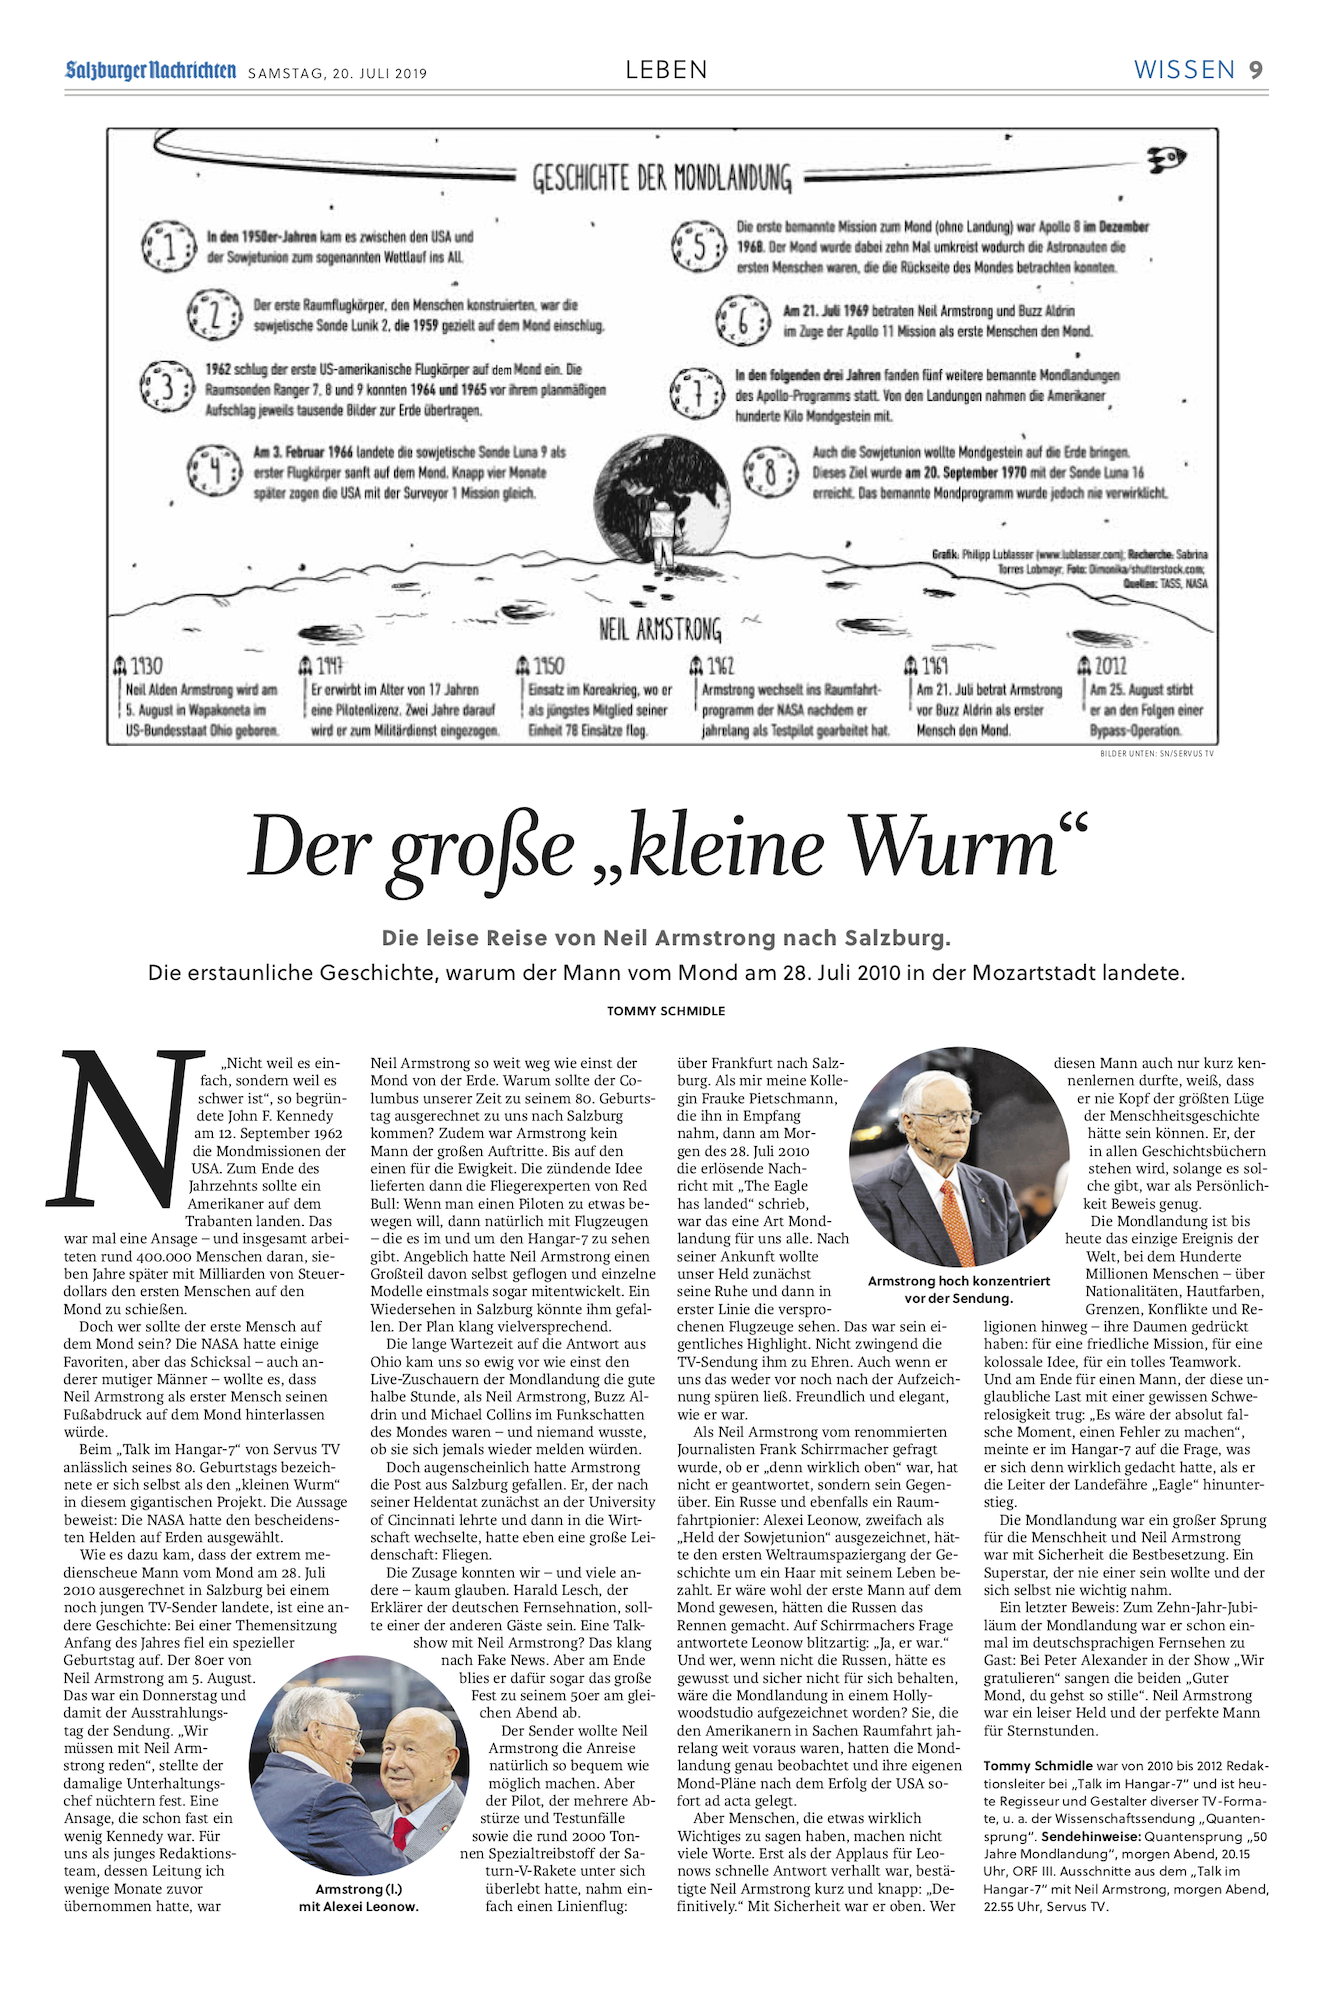 Artikel aus den Salzburger Nachrichten zu 50 Jahre Mondlandung